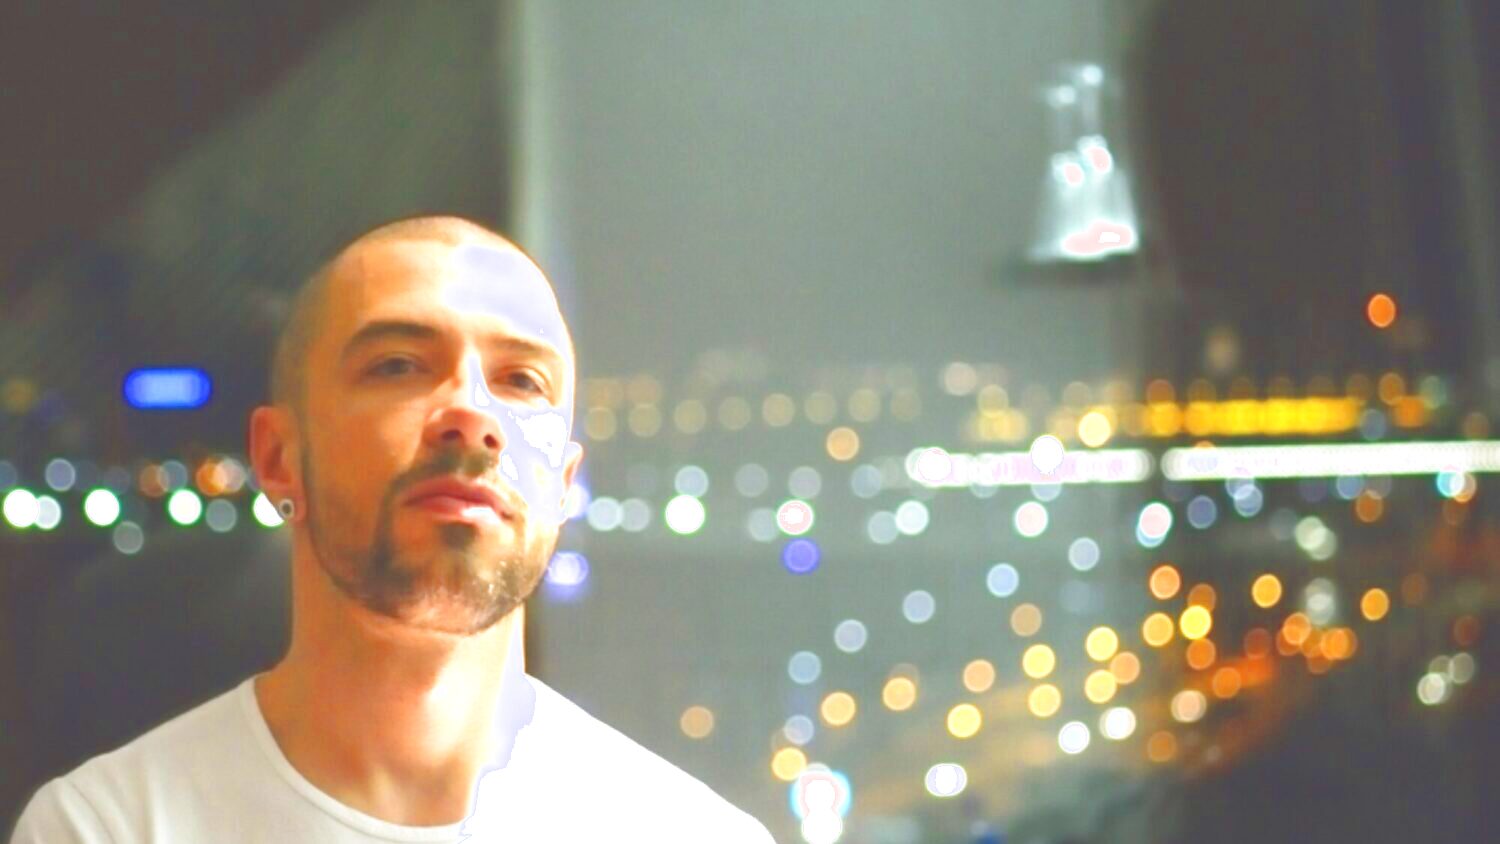 Das Porträt eines Mannes (Marko Nikodijević). Er blickt geradeaus und trägt ein weißes T-Shirt. Im Hintergrund sind die Lichter einer nächtlichen Stadt zu sehen.